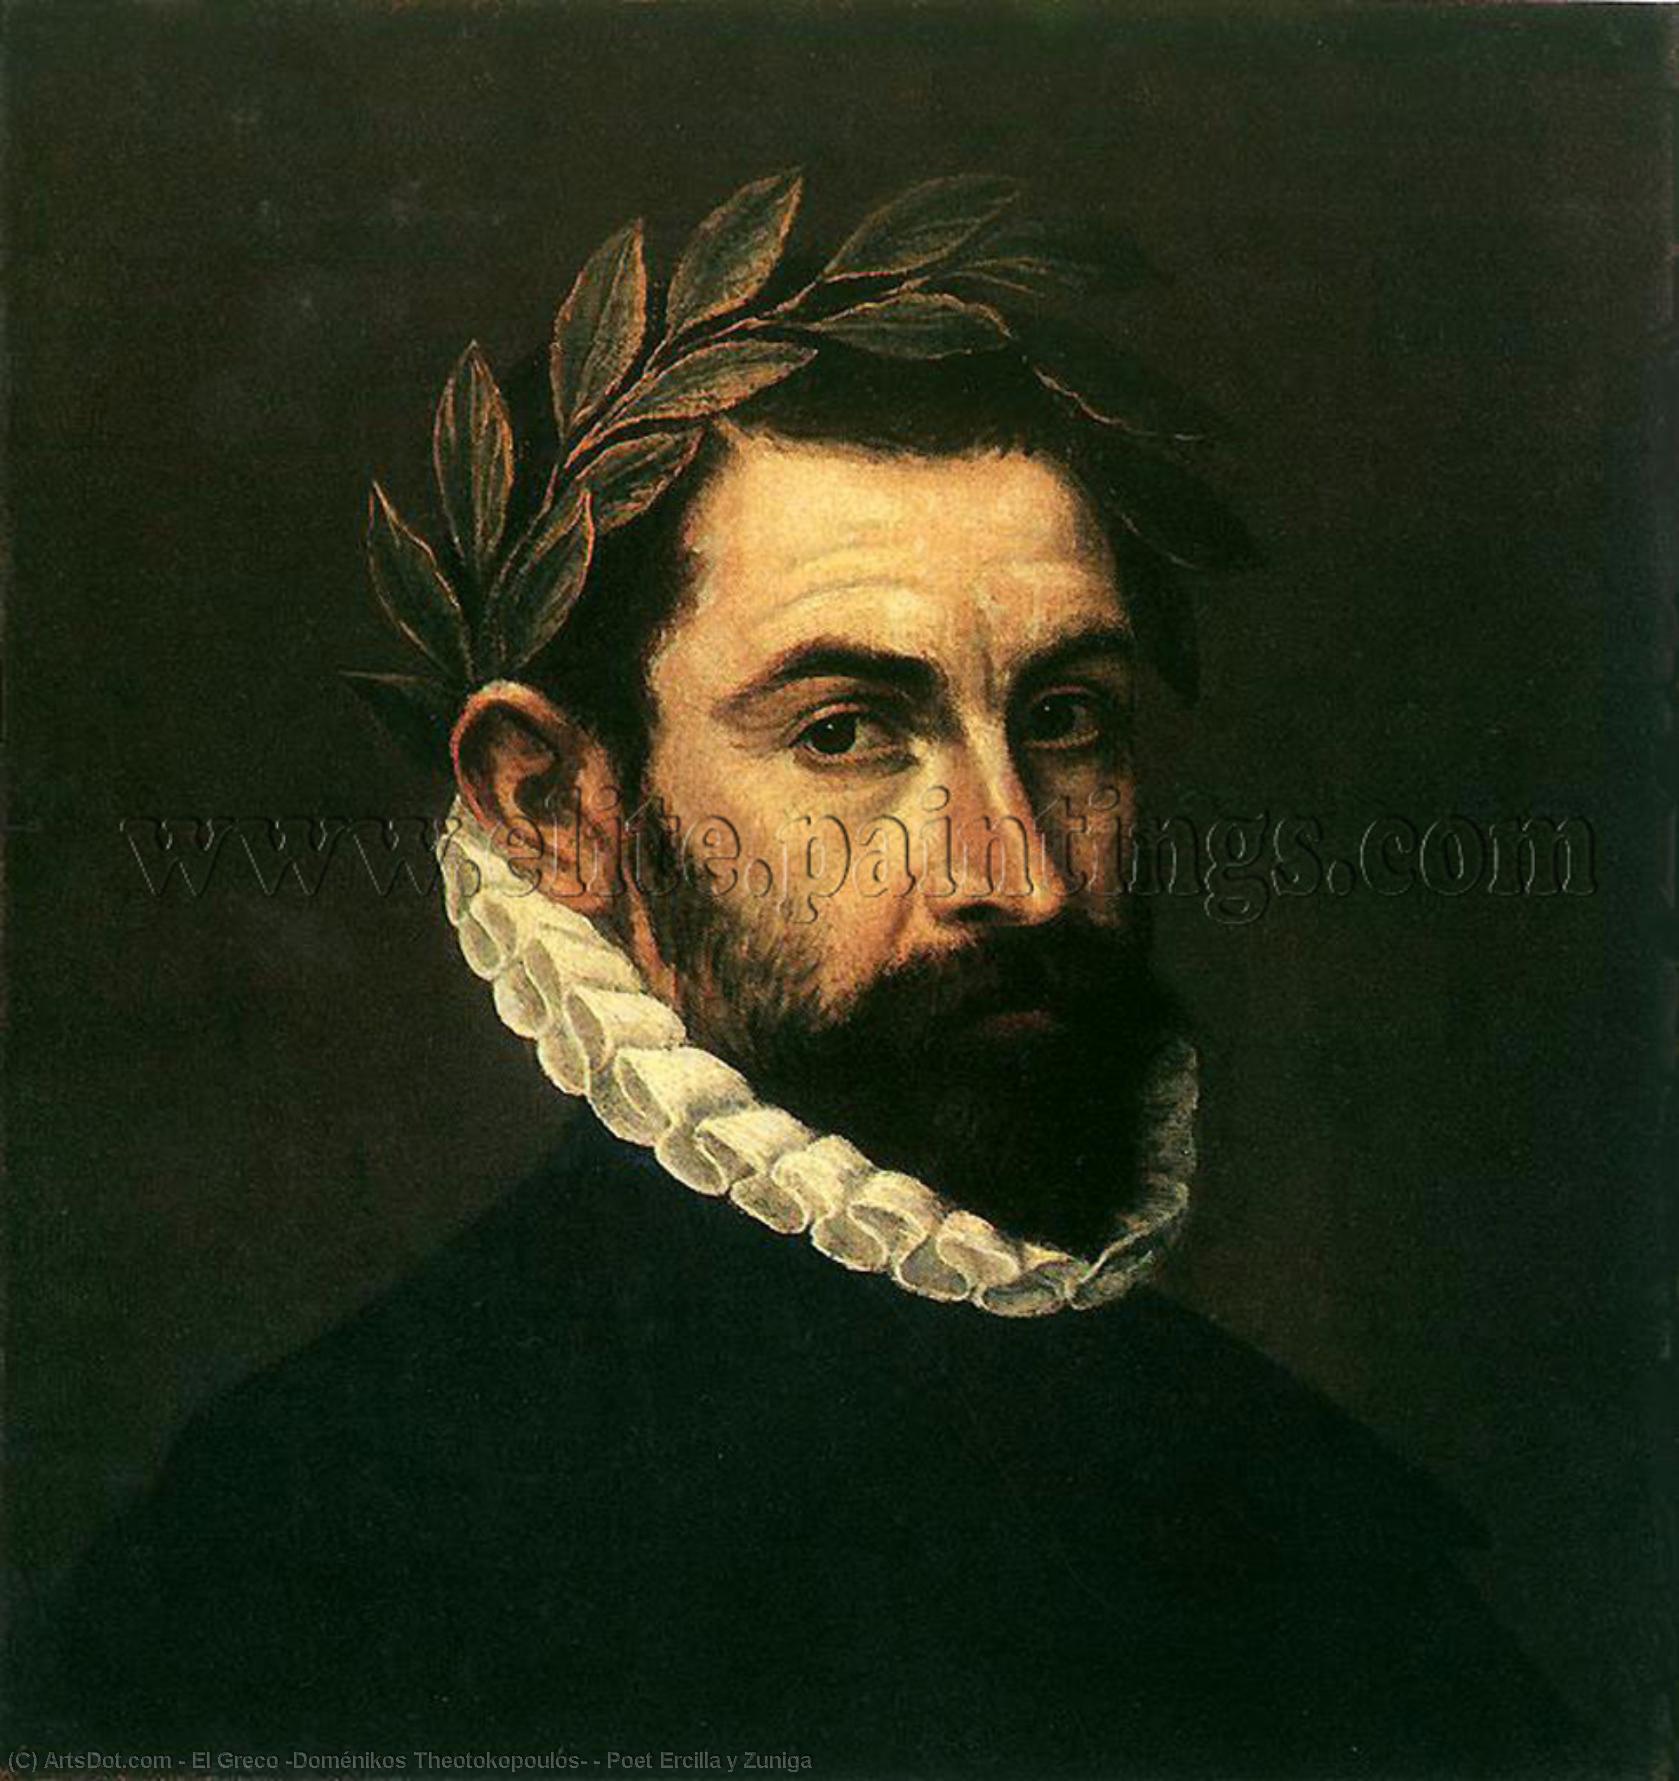 WikiOO.org - Encyclopedia of Fine Arts - Malba, Artwork El Greco (Doménikos Theotokopoulos) - Poet Ercilla y Zuniga